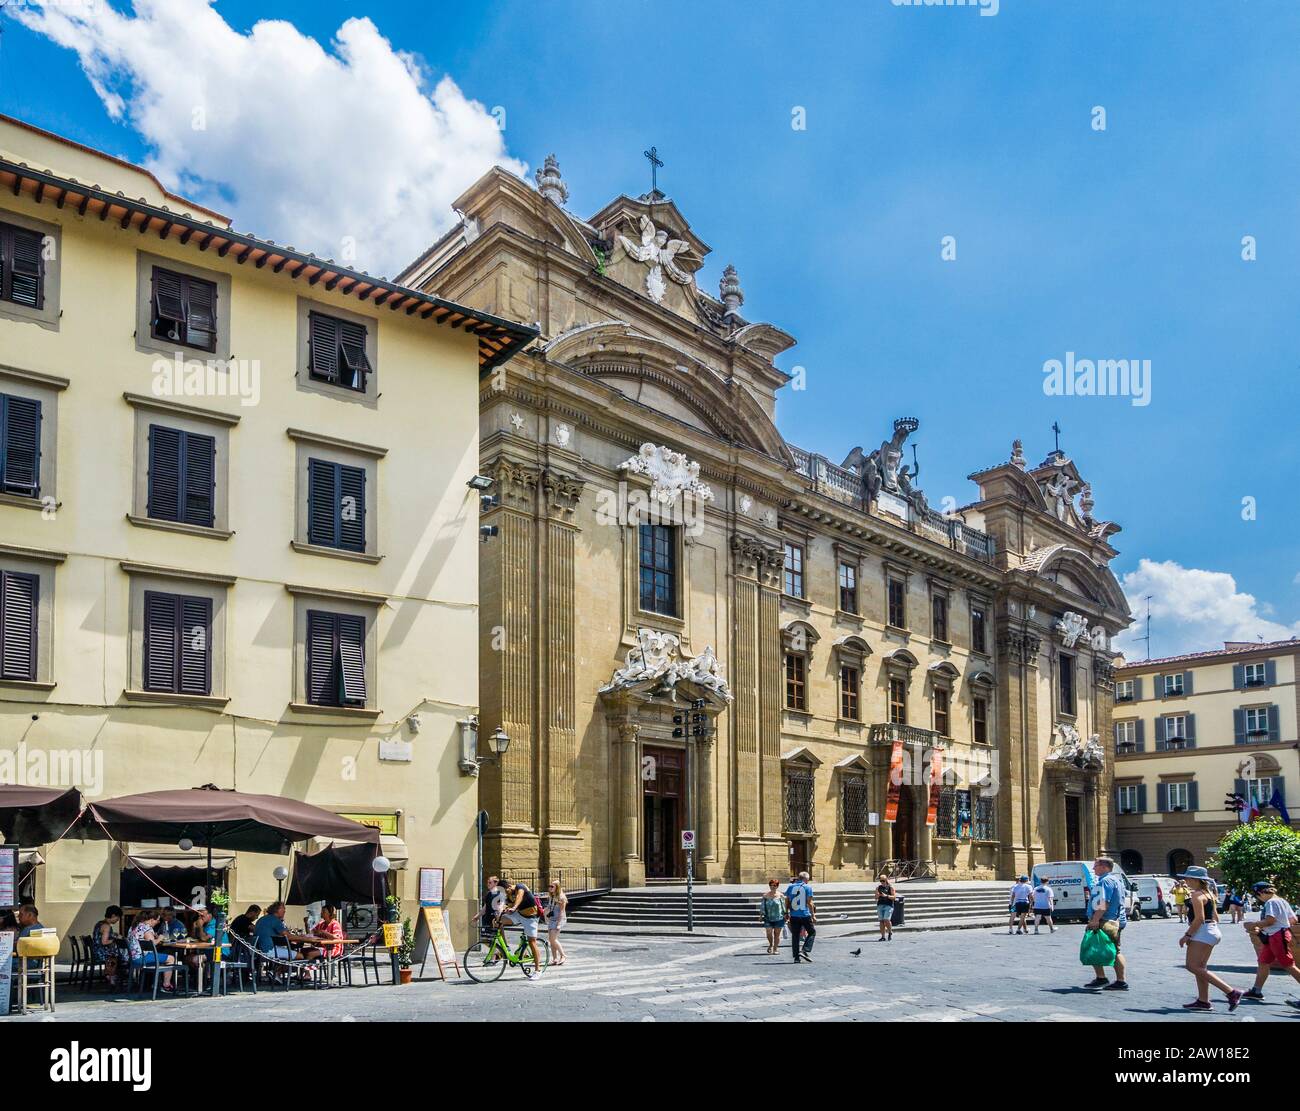 Piazza di San Firenze im Viertel Santa Croce im Zentrum von Florenz mit Blick auf die Fassade des Oratory-Seminars im Stil des Barock aus dem 17. Jahrhundert Stockfoto